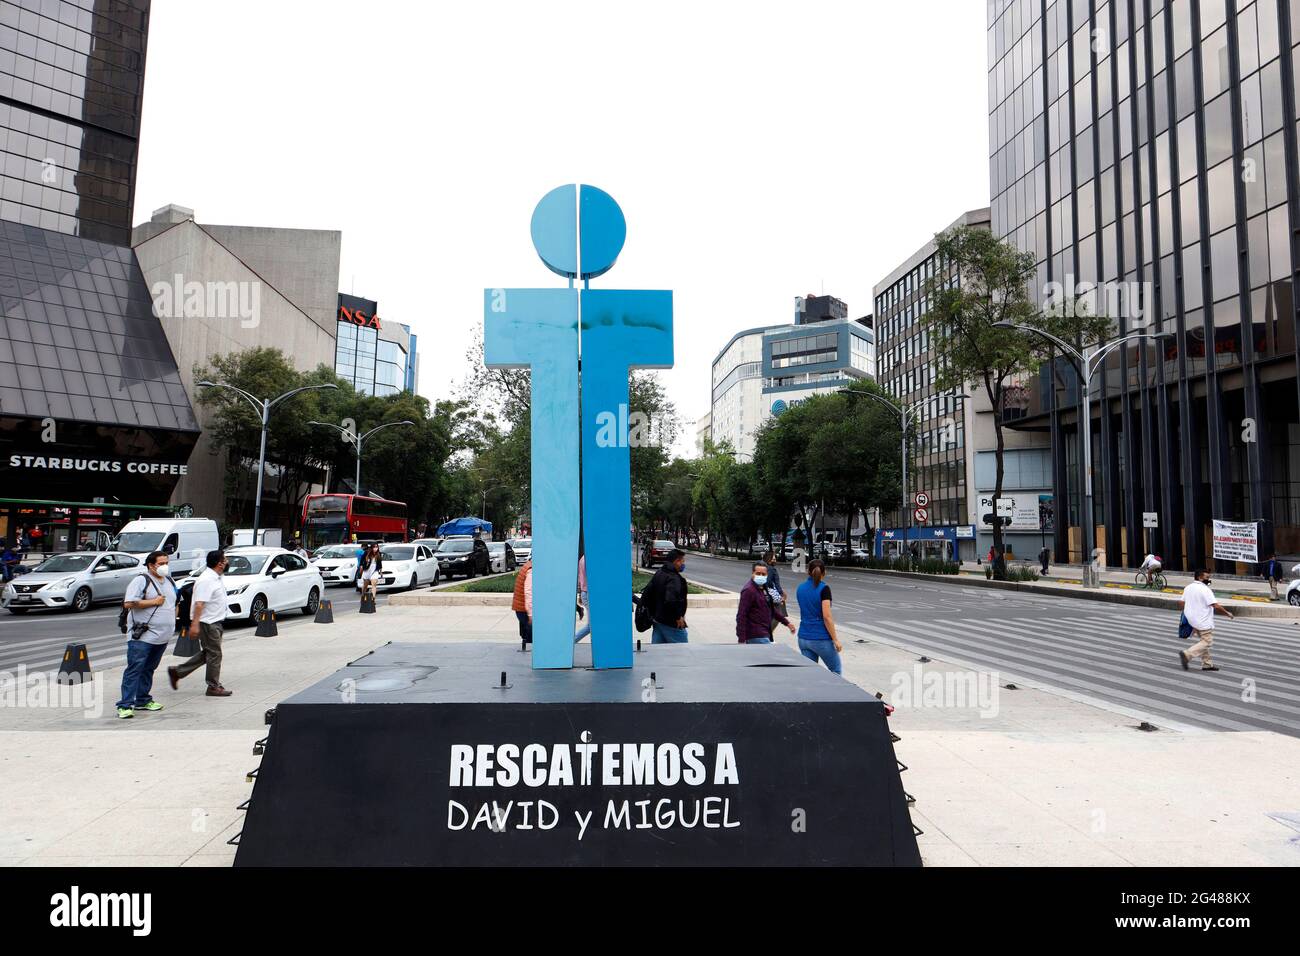 CIUDAD DE MÉXICO, MÉXICO 19 DE JUNIO: Antimonumento en memoria de David  Ramírez Valenzuela y Miguel Angel Rivera Díaz, el 5 de enero de 2012,  cuando viajaban de Ciudad de México a